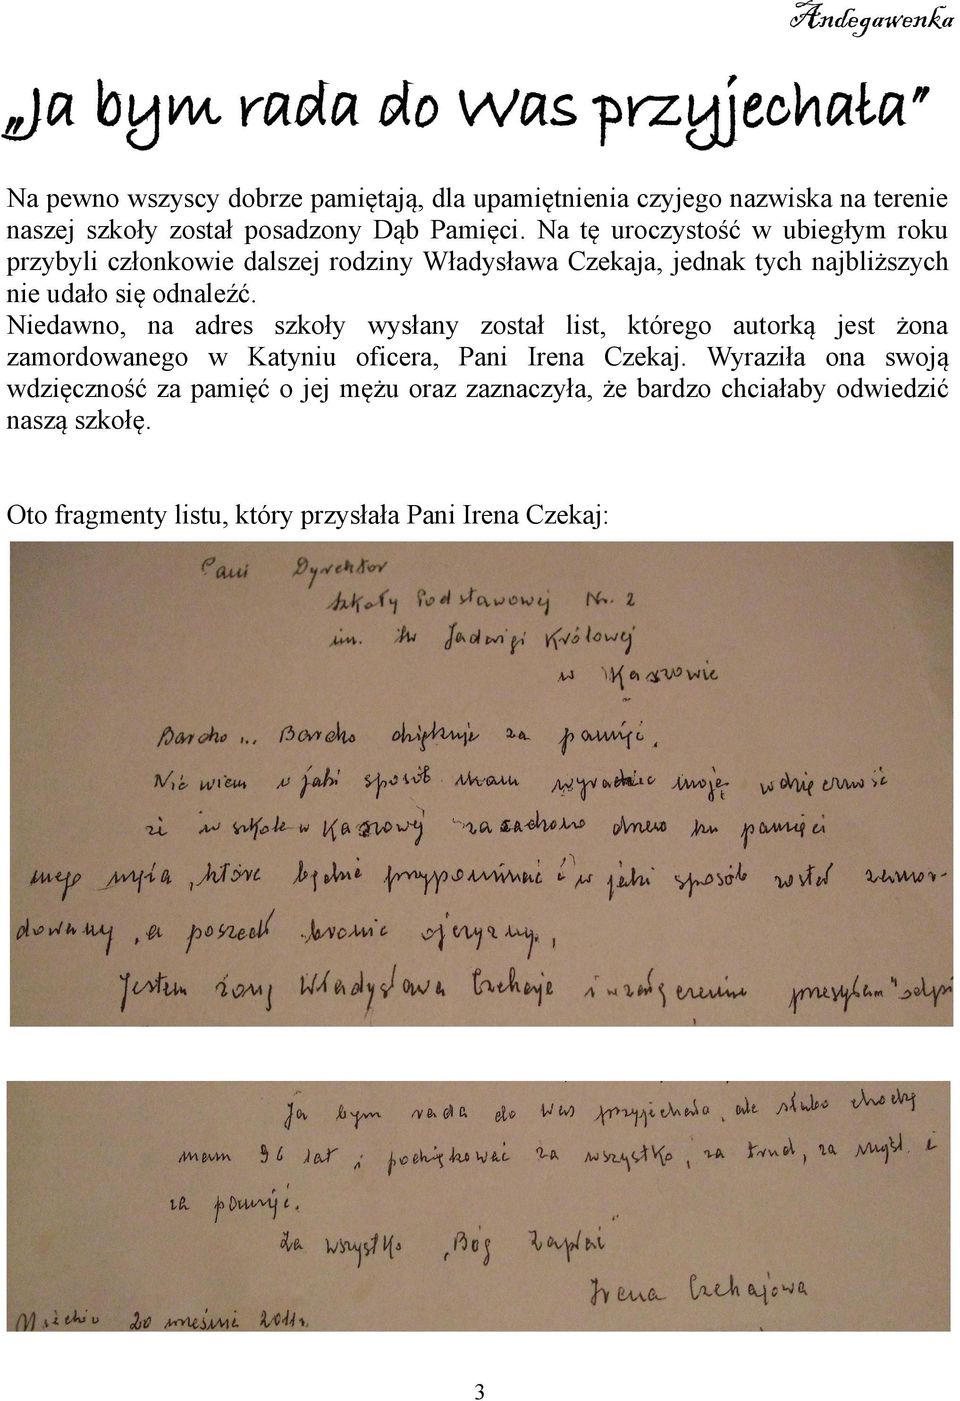 Niedawno, na adres szkoły wysłany został list, którego autorką jest żona zamordowanego w Katyniu oficera, Pani Irena Czekaj.